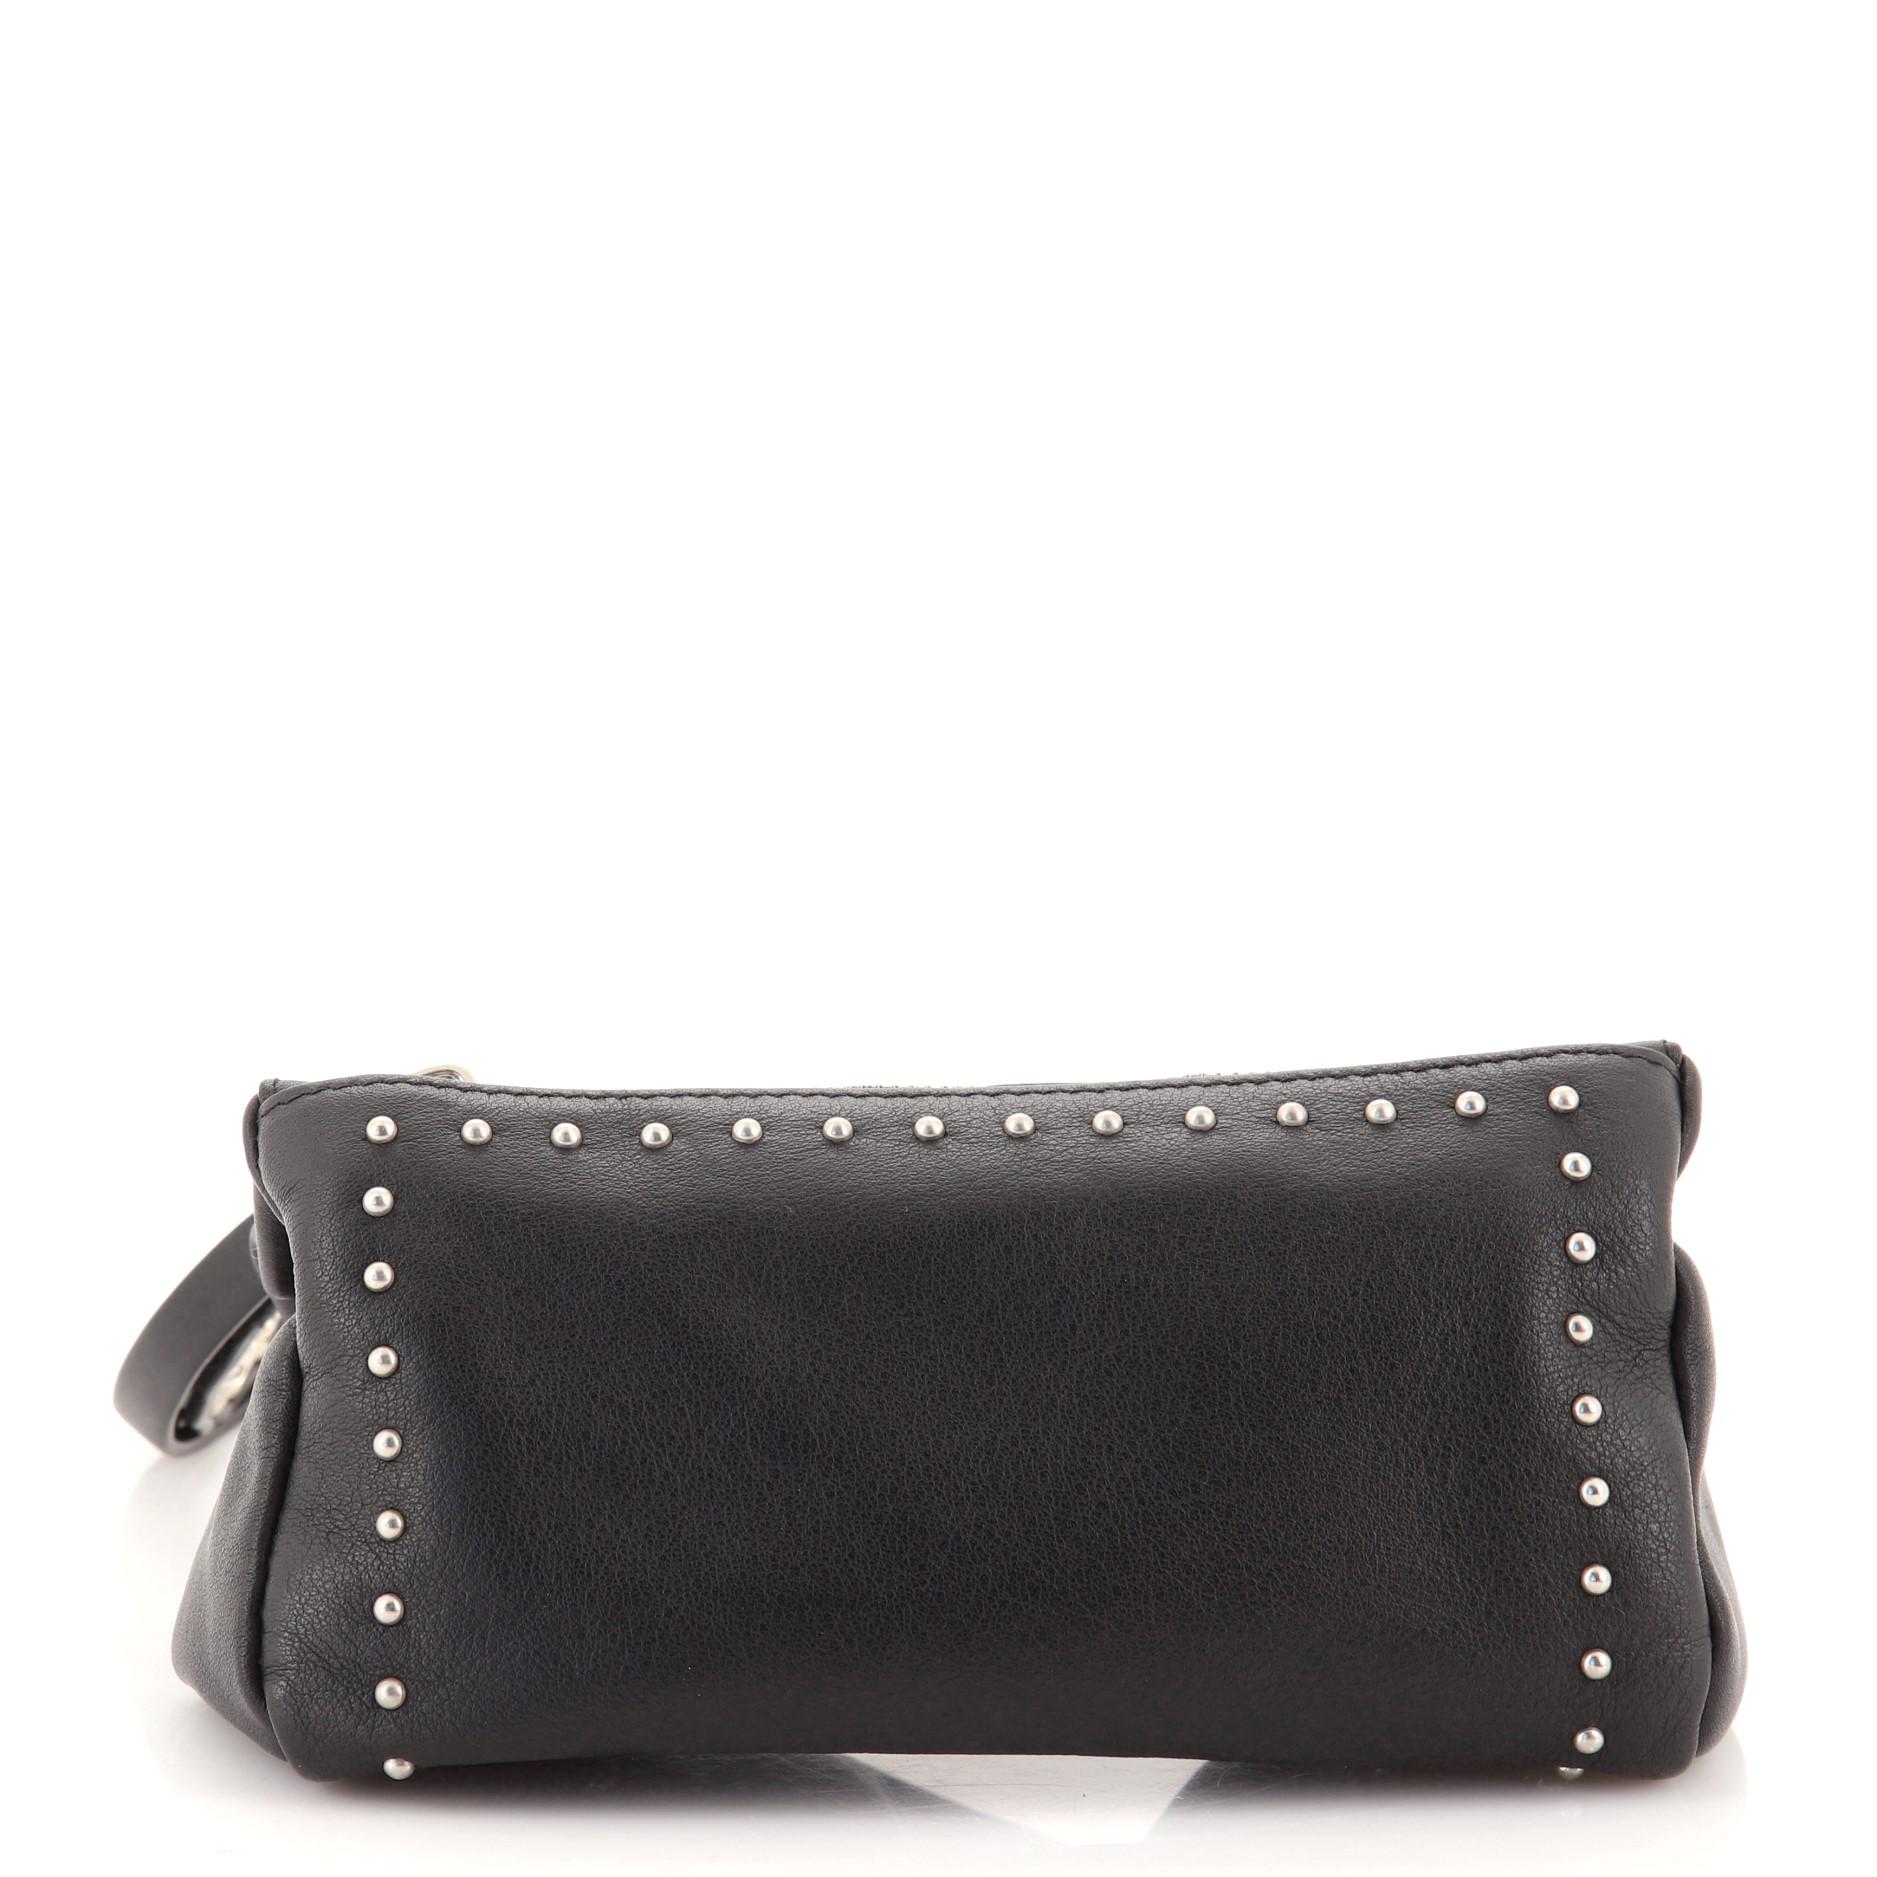 Black Givenchy Pandora Wristlet Clutch Studded Leather